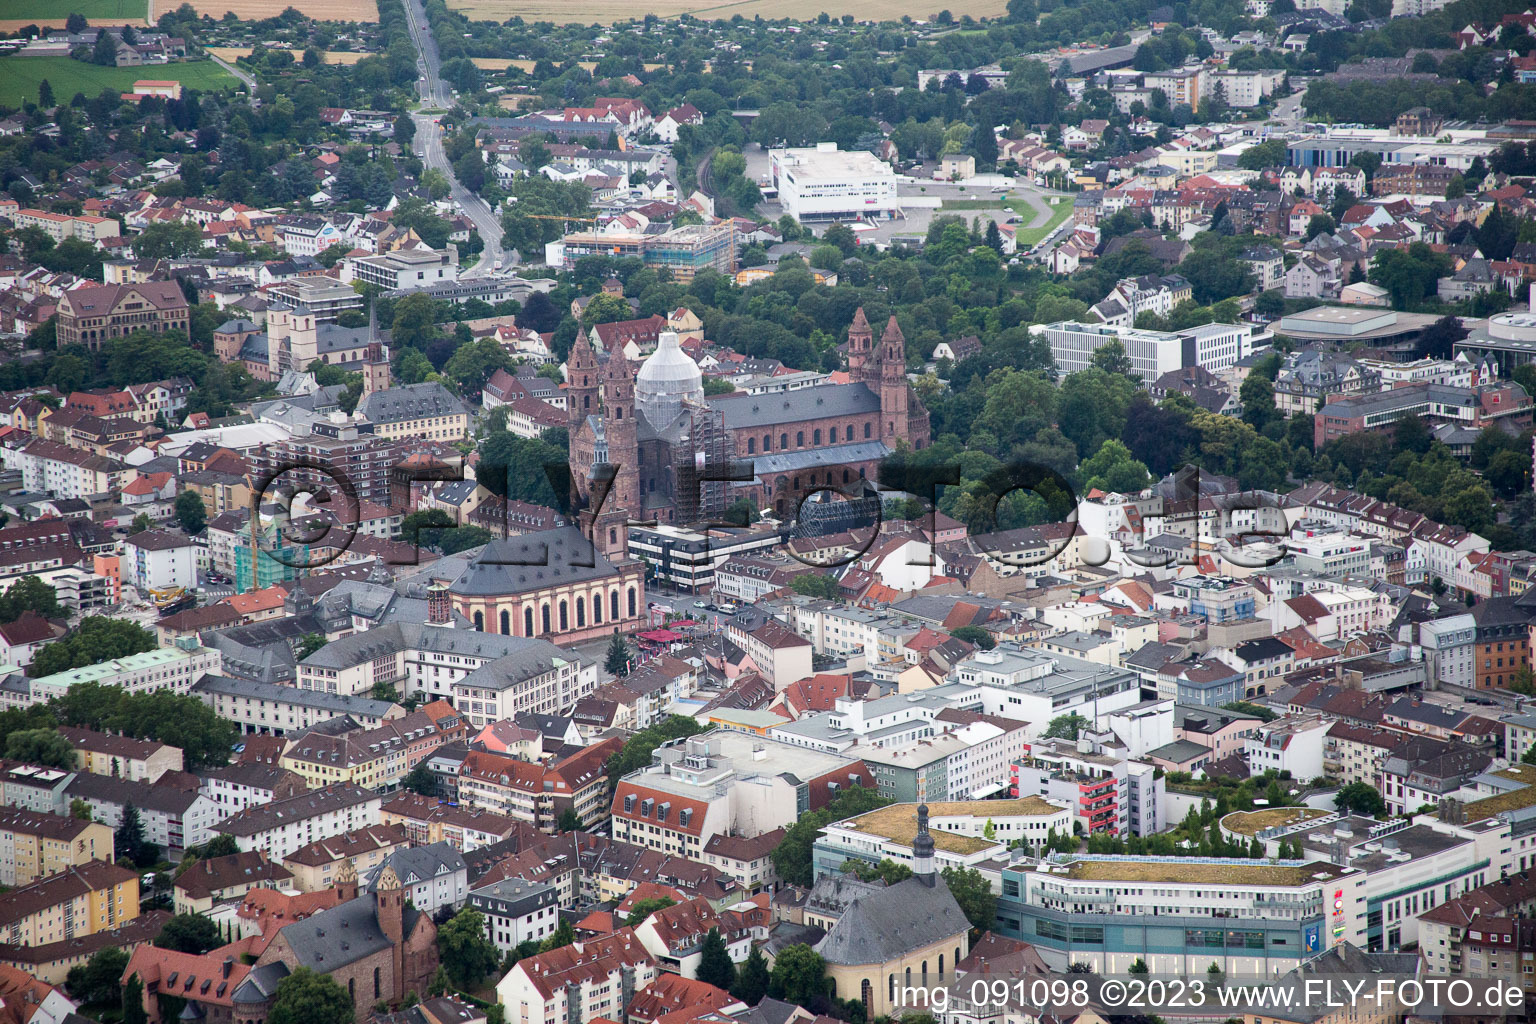 Luftbild von Worms im Bundesland Rheinland-Pfalz, Deutschland